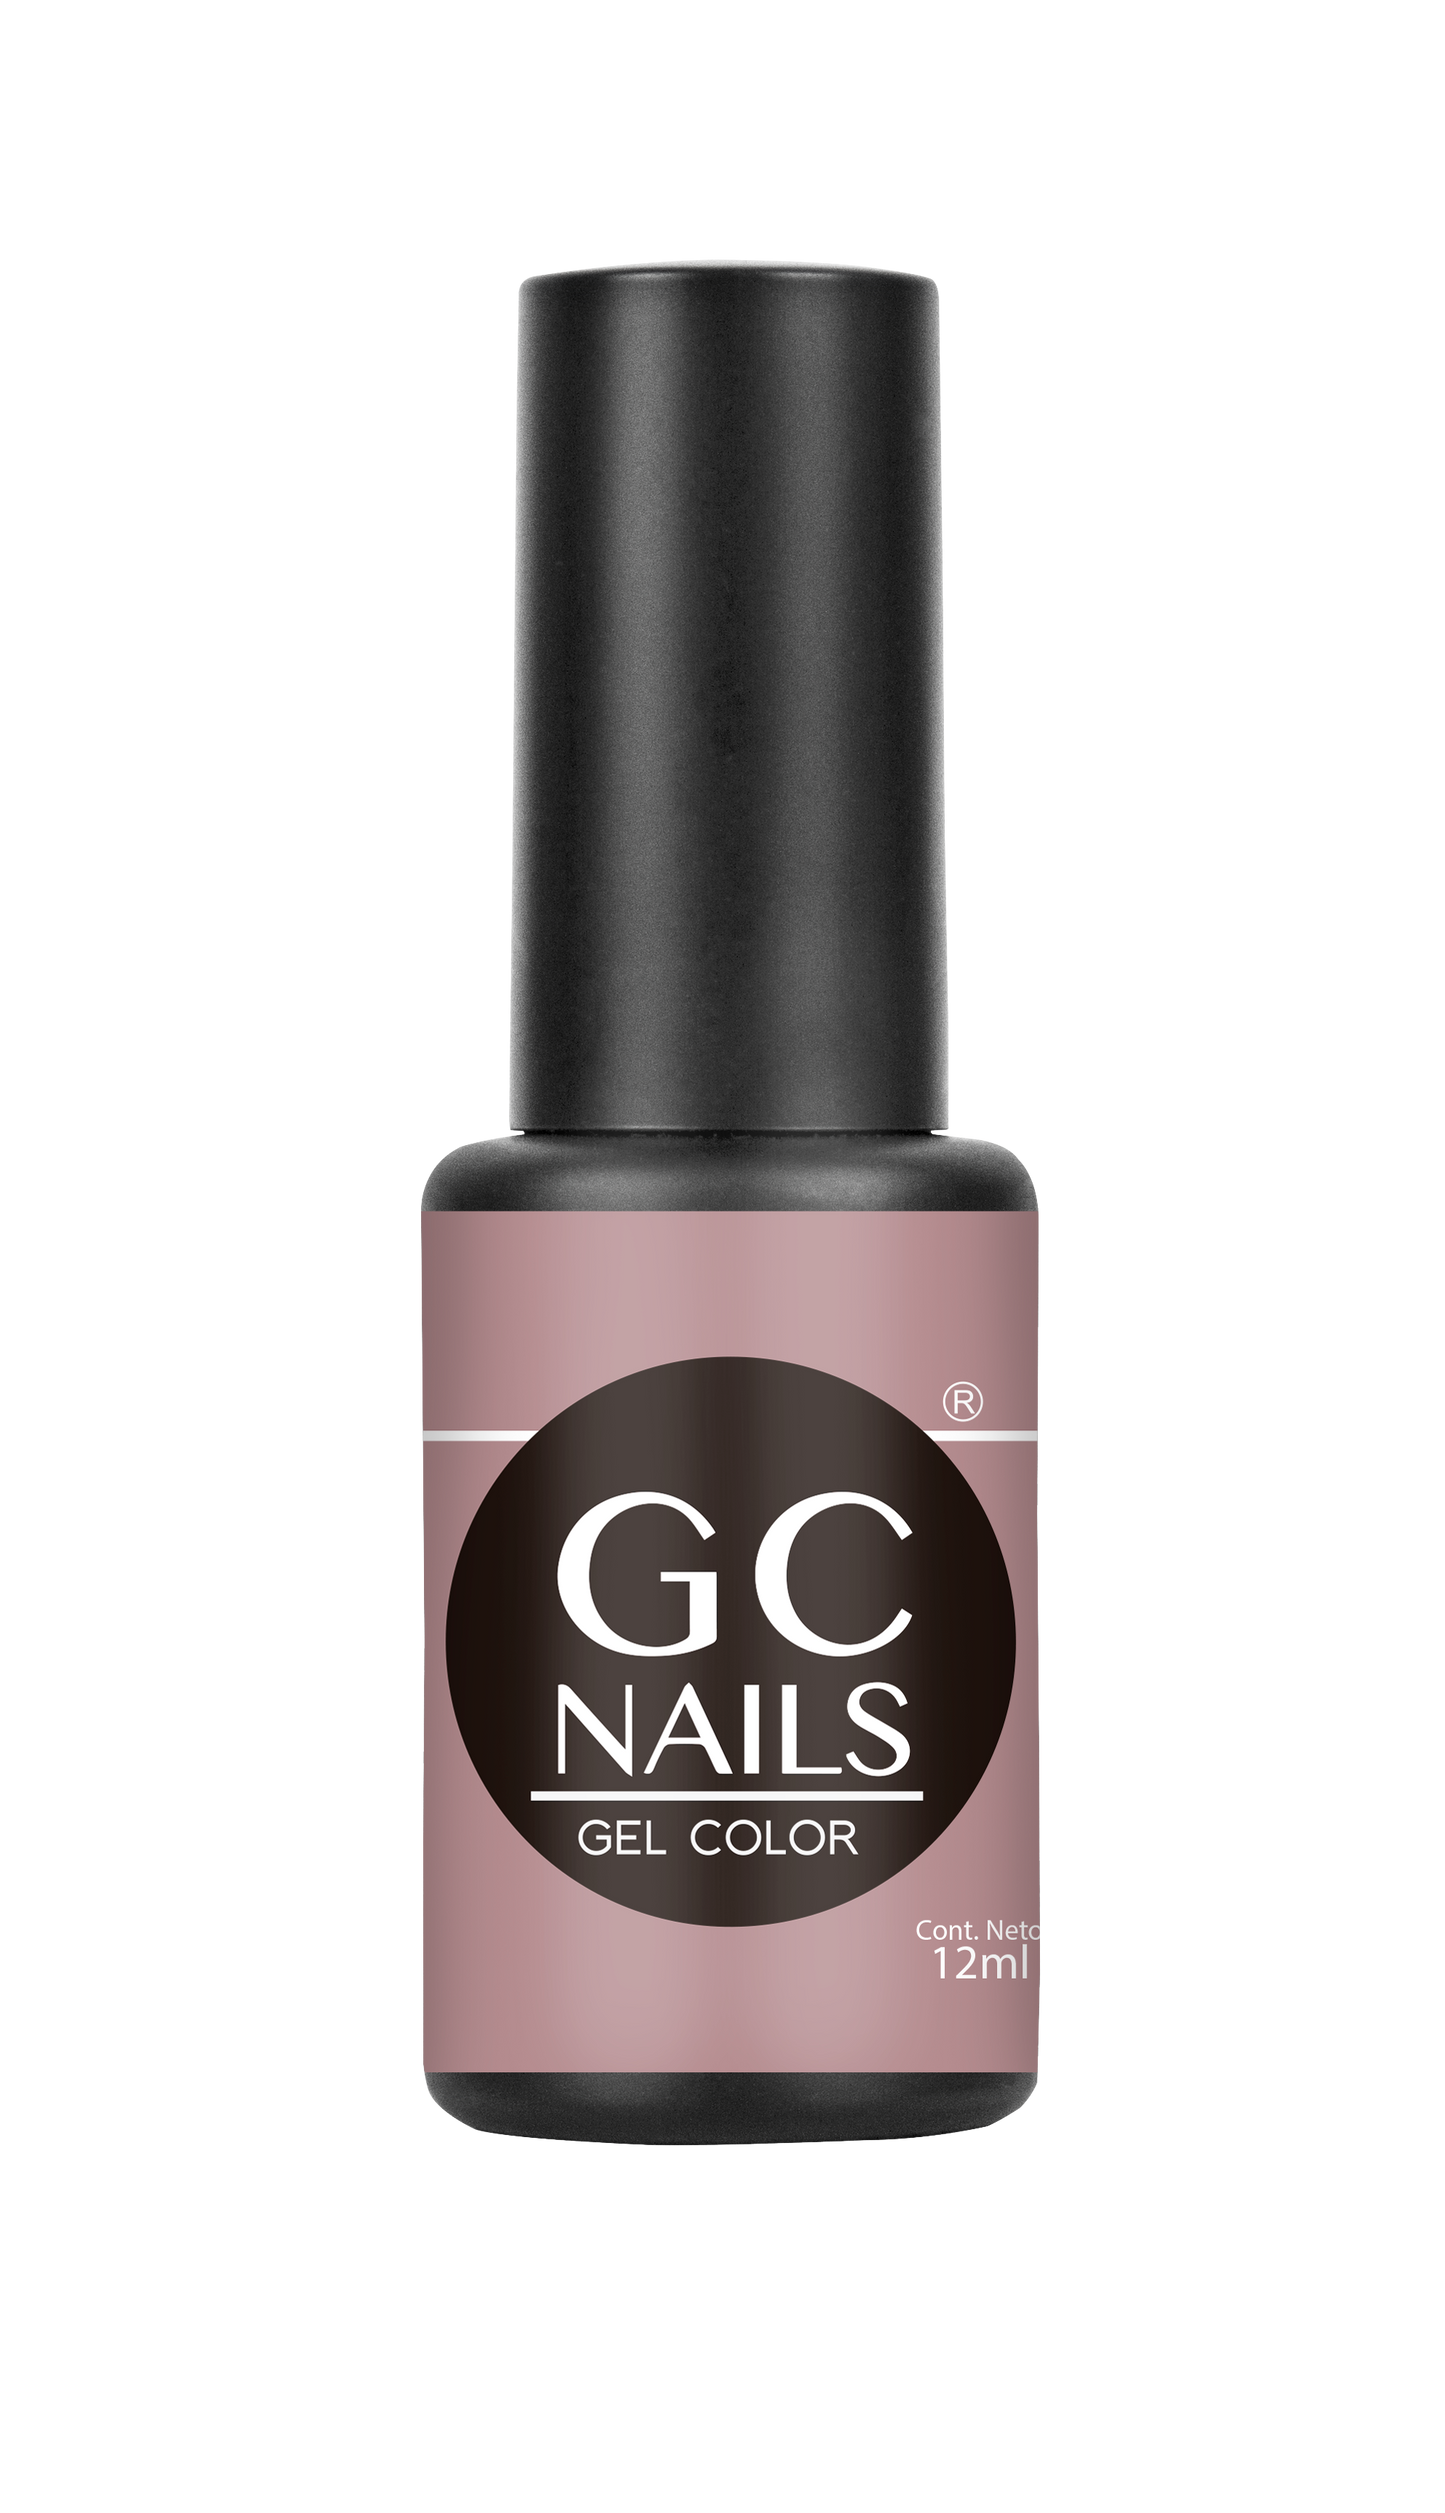 GC nails bel-color 12ml ALMENDRA 73